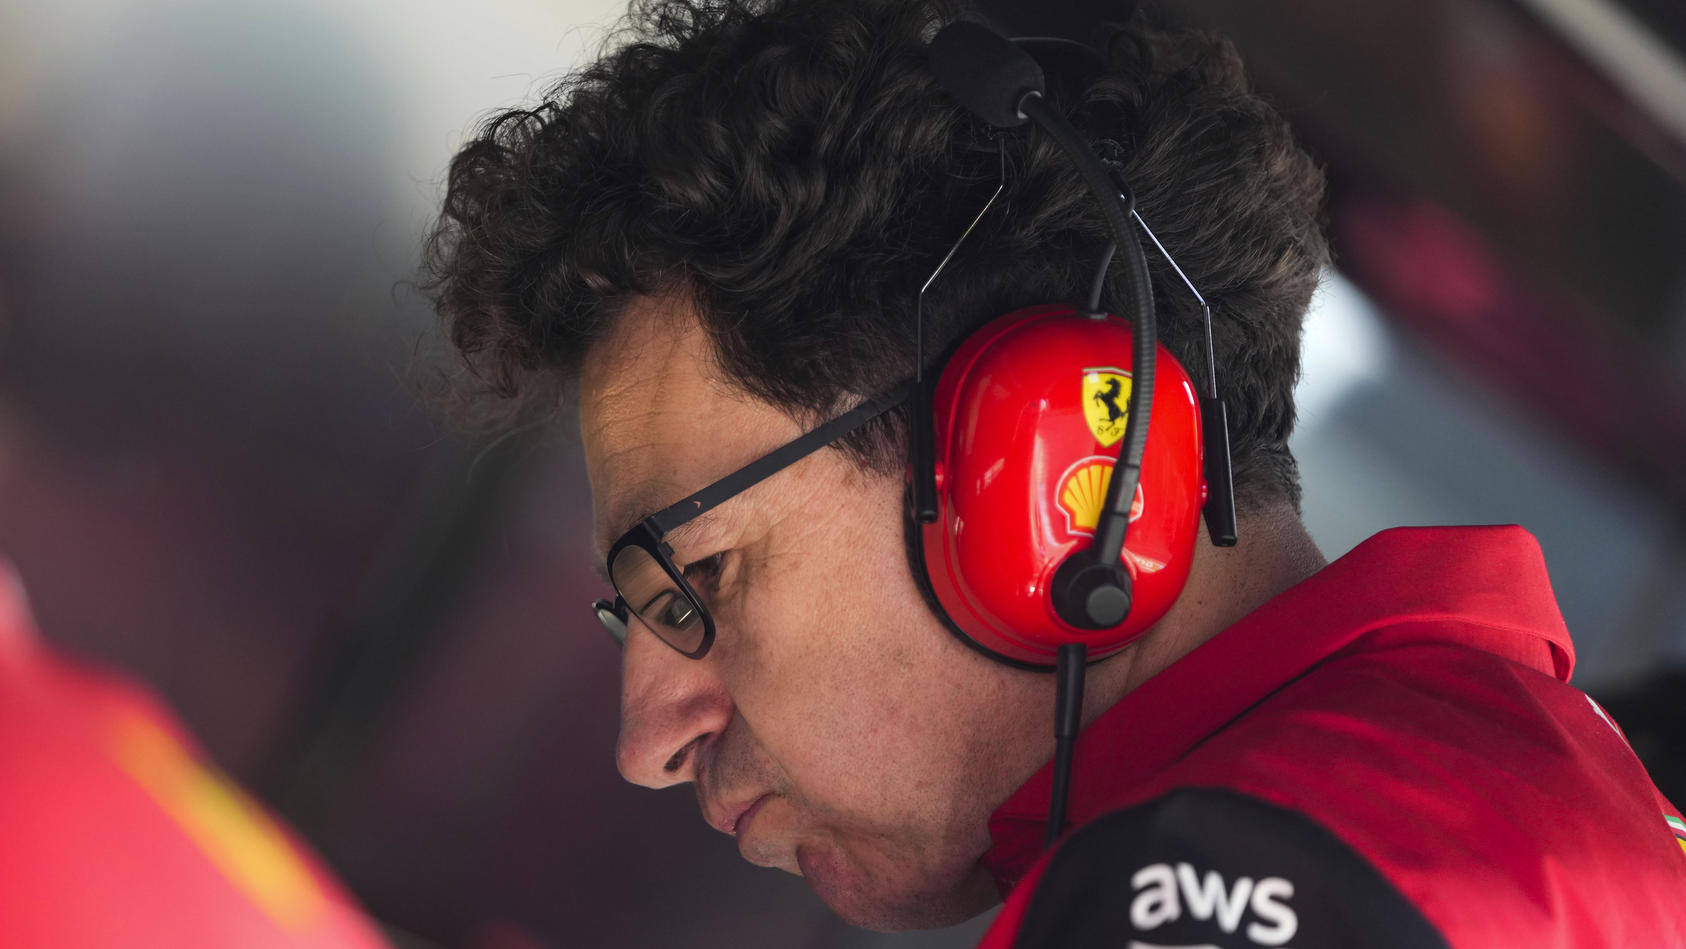 Nachfolger von der Konkurrenz? - Binotto tritt als Ferrari-Teamchef ab